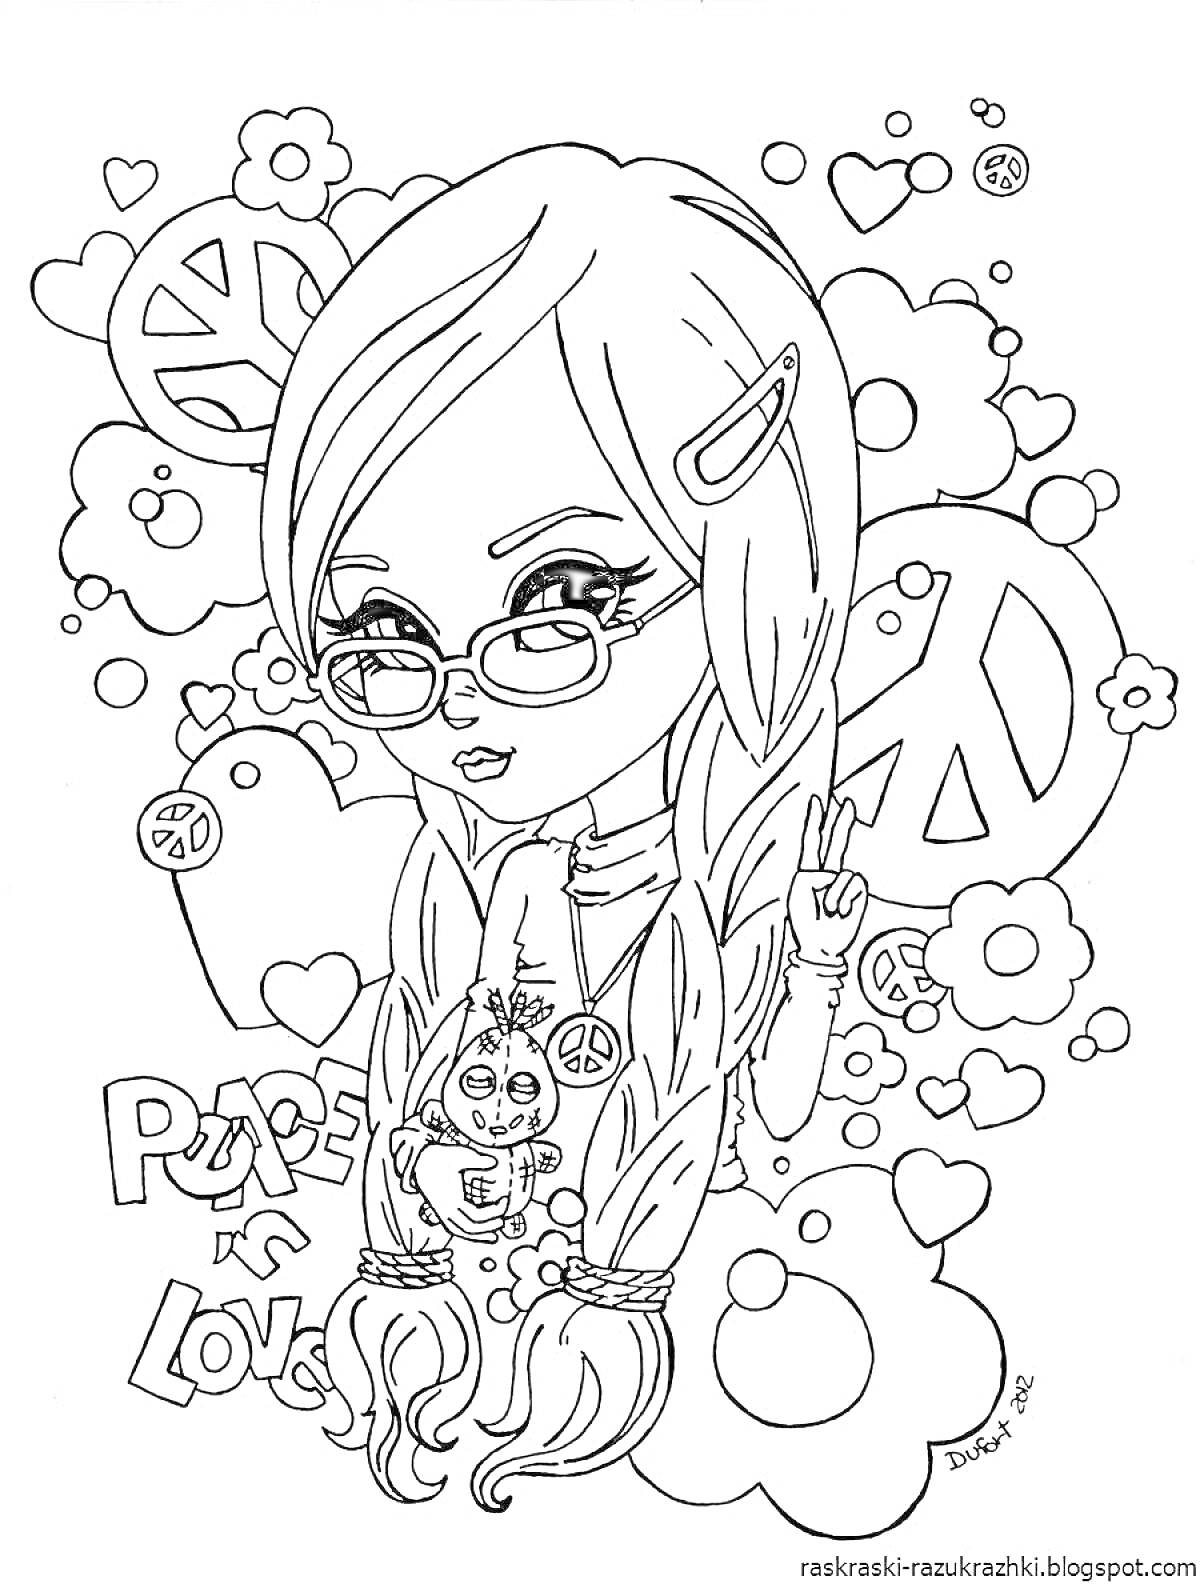 Раскраска Девочка с двумя косами, очками и игрушкой на фоне знаков мира и сердечек